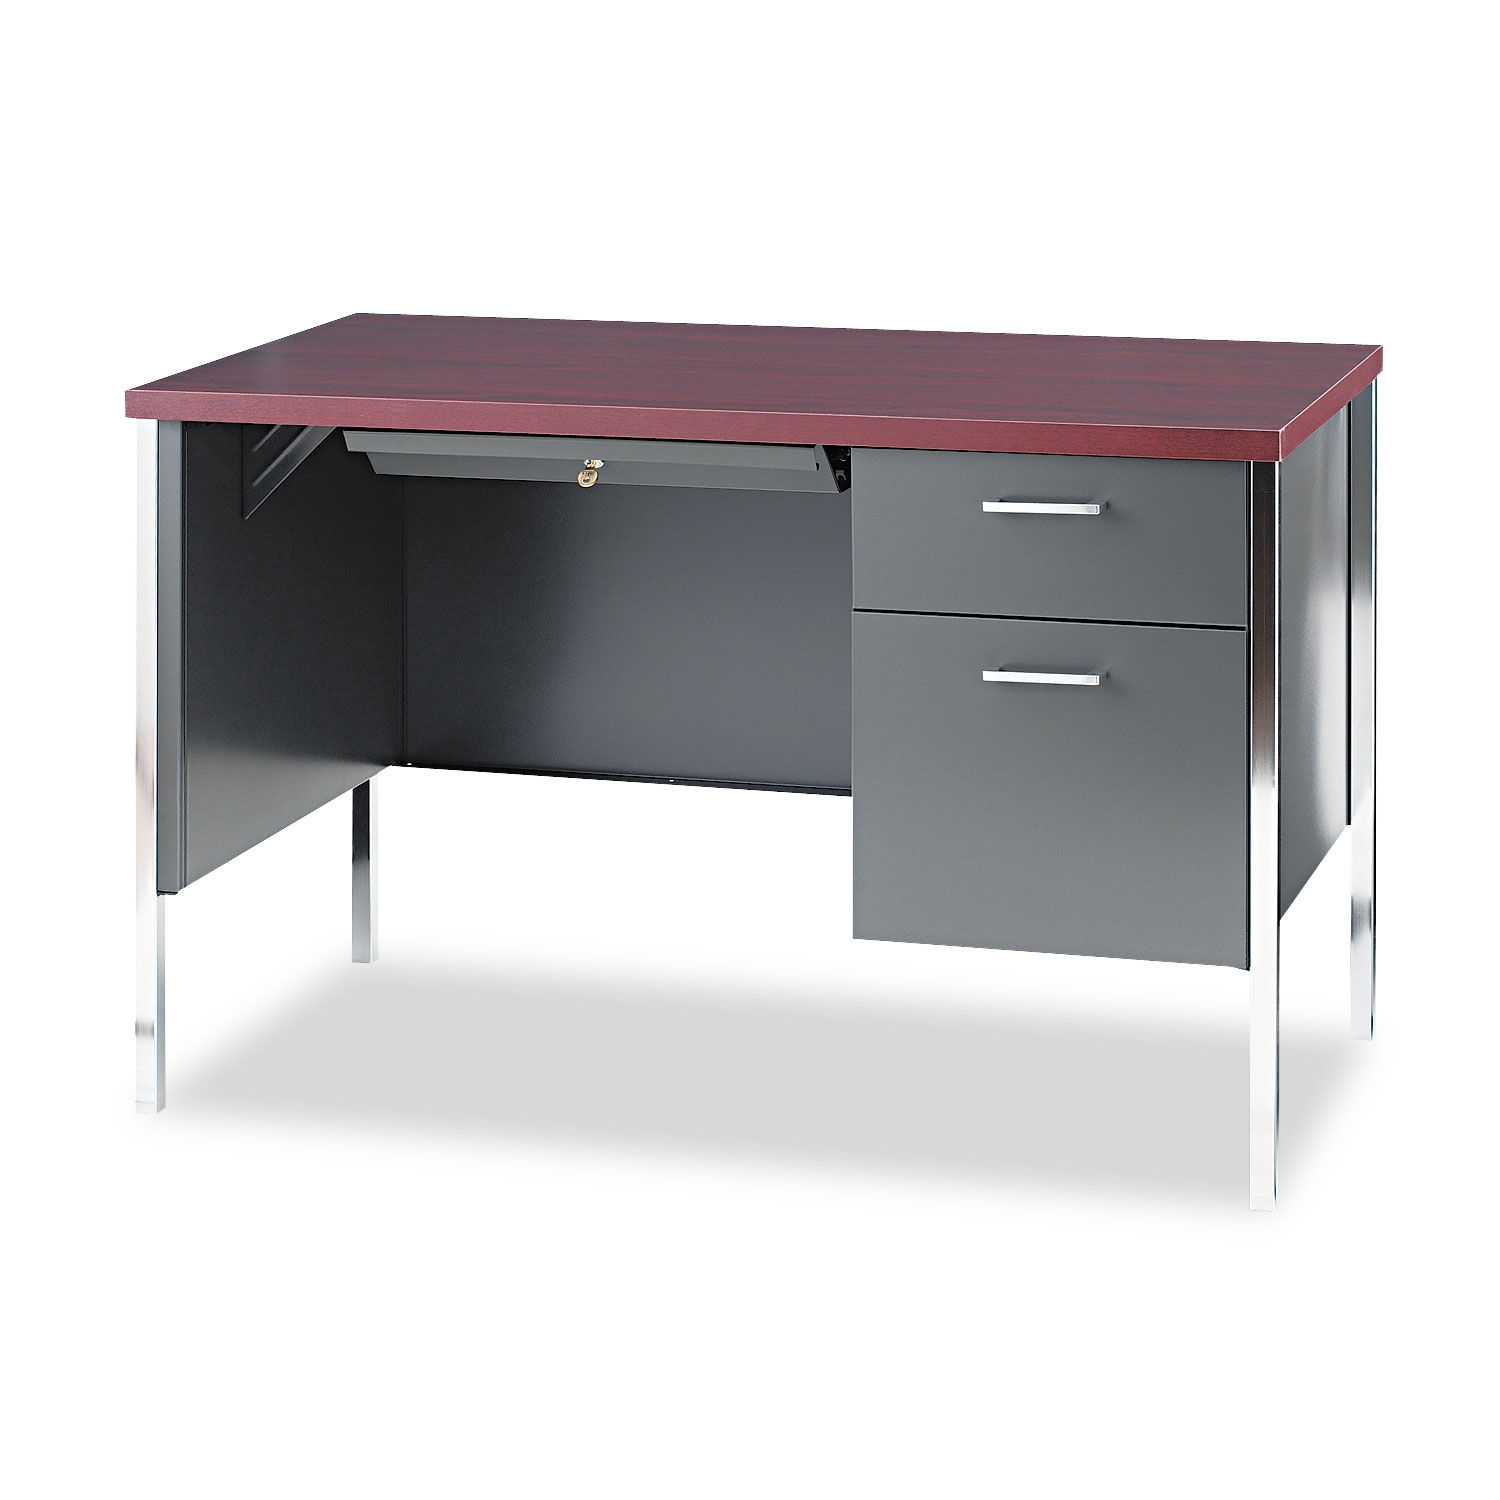  HON H34002R.N.S 34000 Series Right Pedestal Desk, 45.25w x 24d x 29.5h, Mahogany/Charcoal (HON34002RNS) 